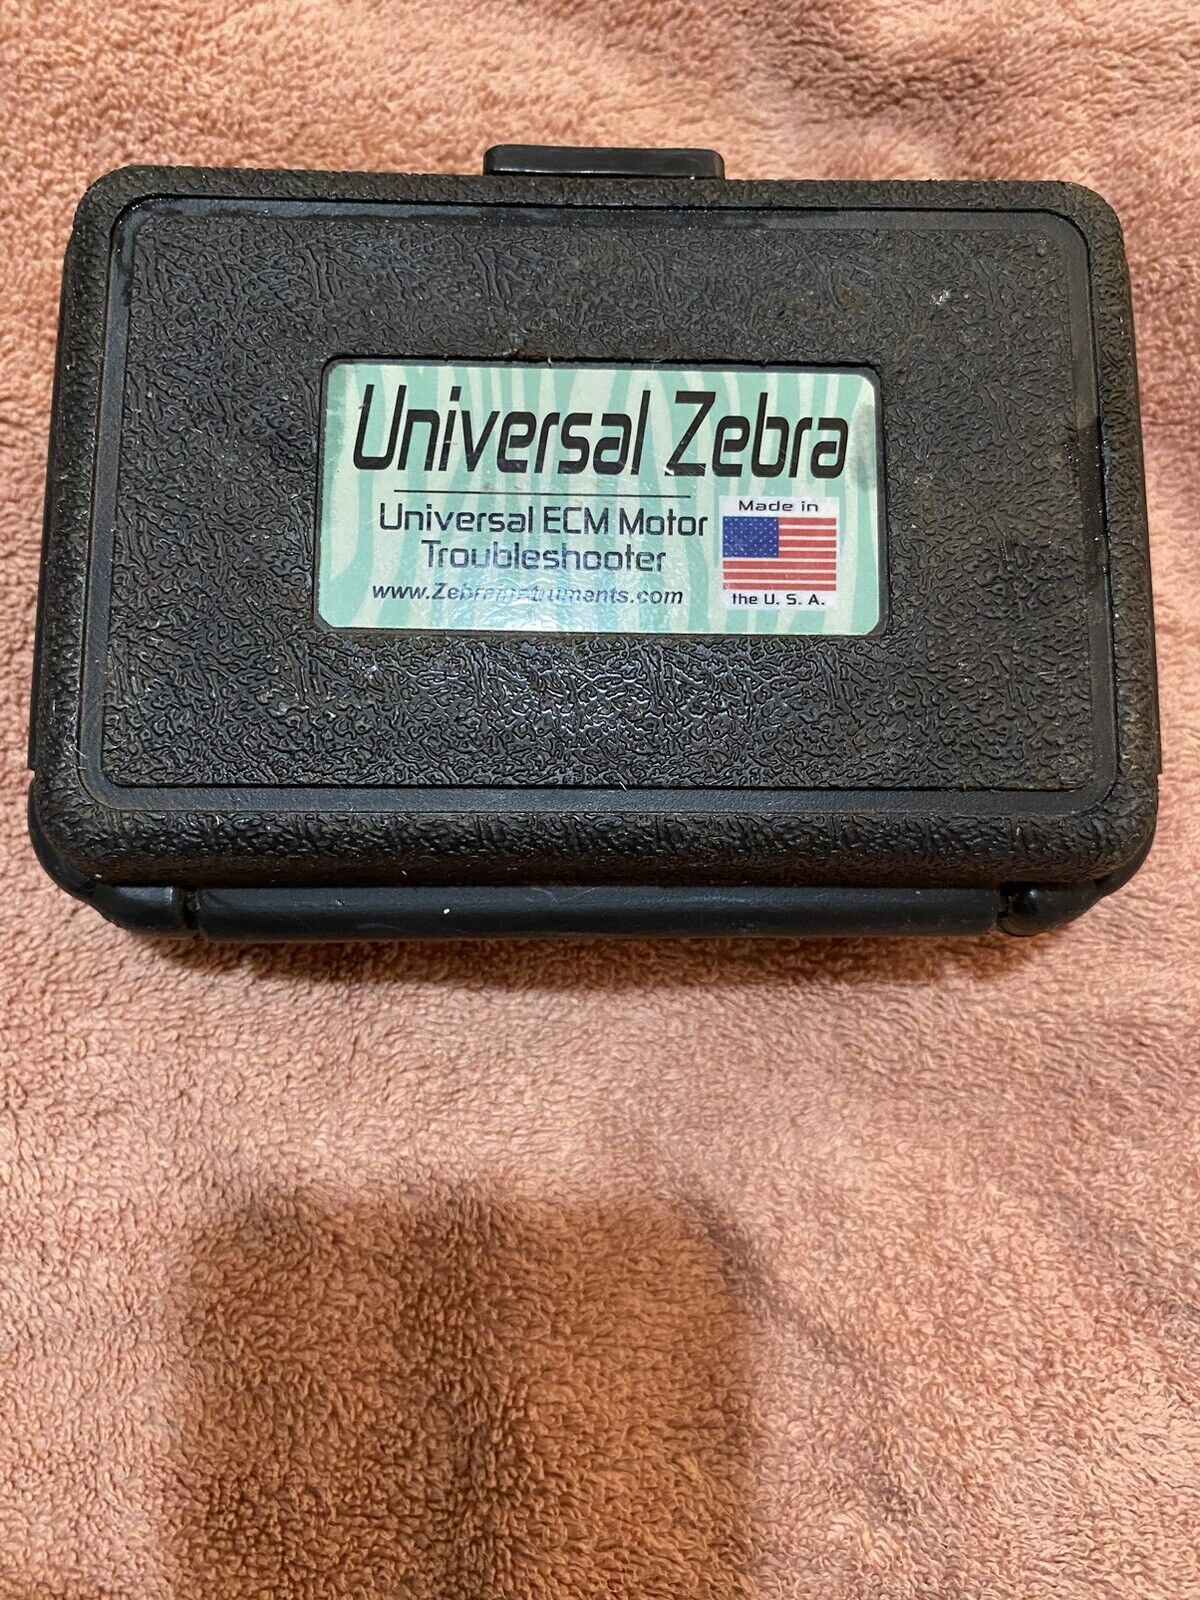 Universal Zebra ECM Motor Troubleshooter Model UZ-1